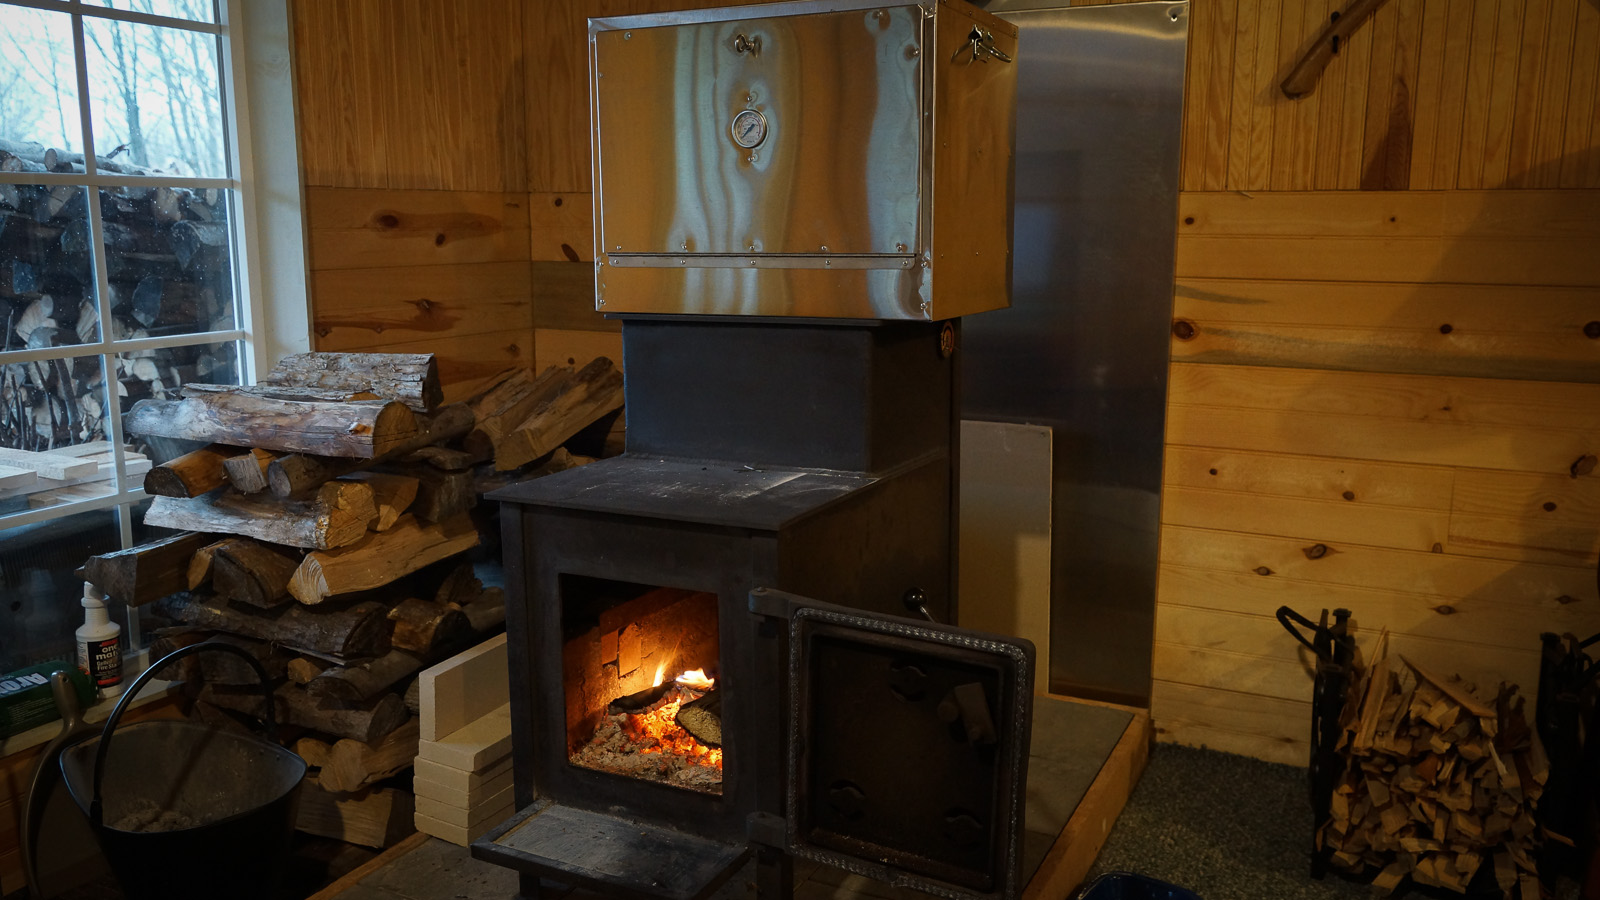 Amish oven on wood stove